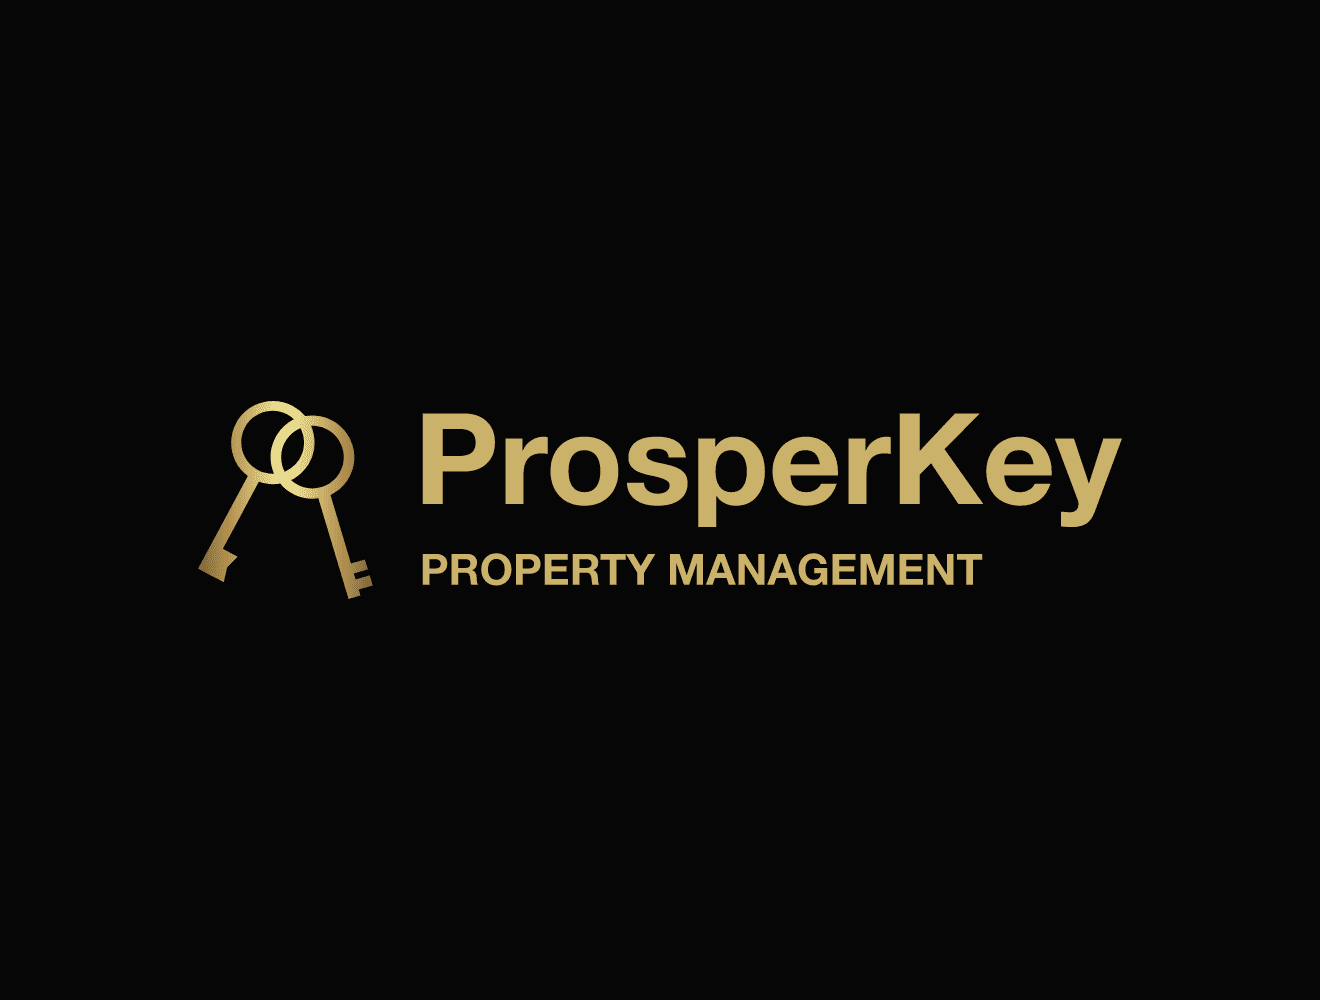 ProsperKey